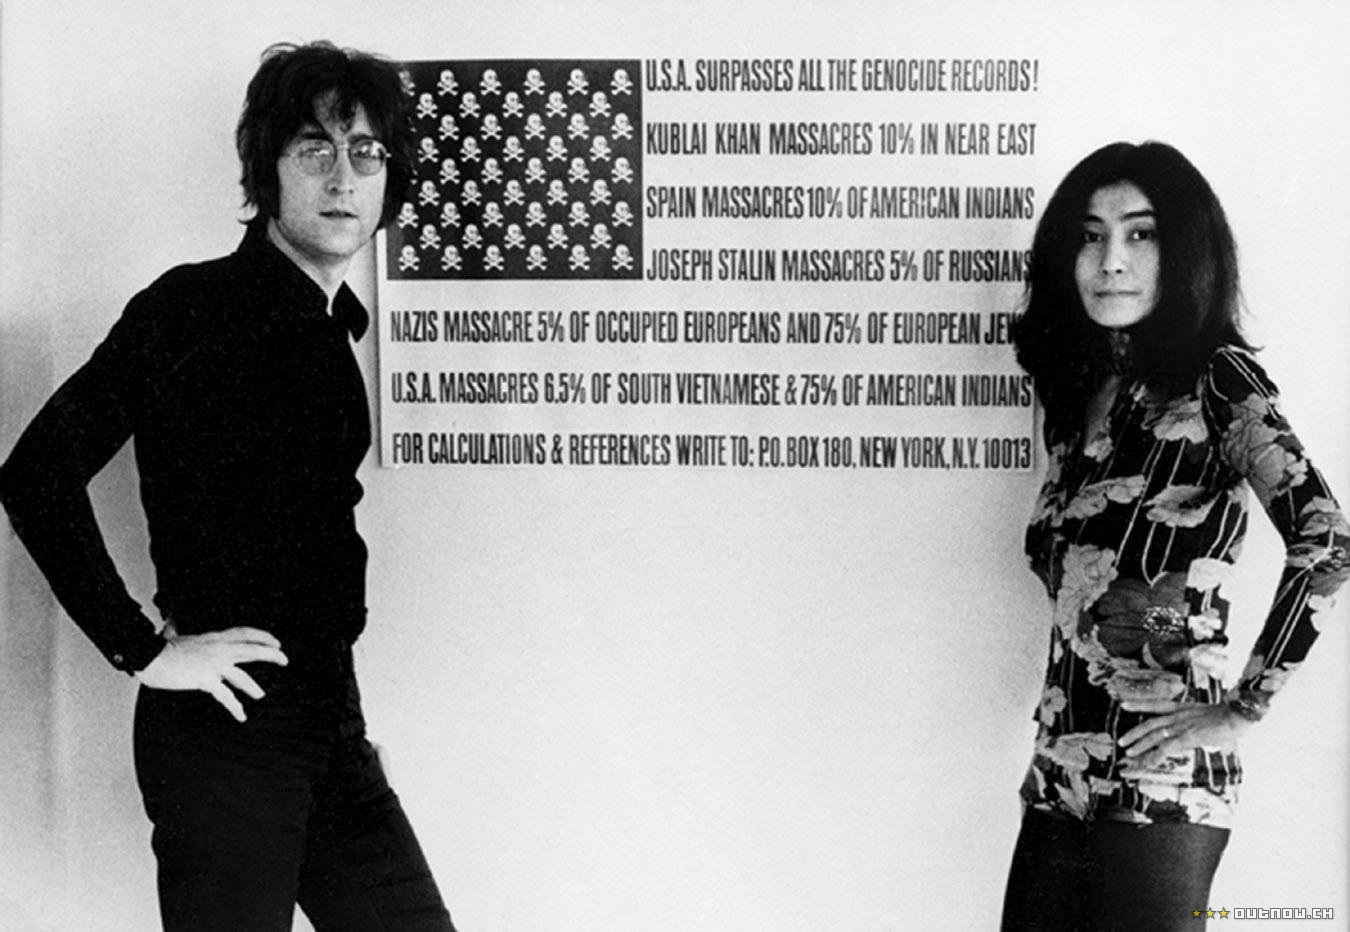 The U.S. vs. John Lennon 